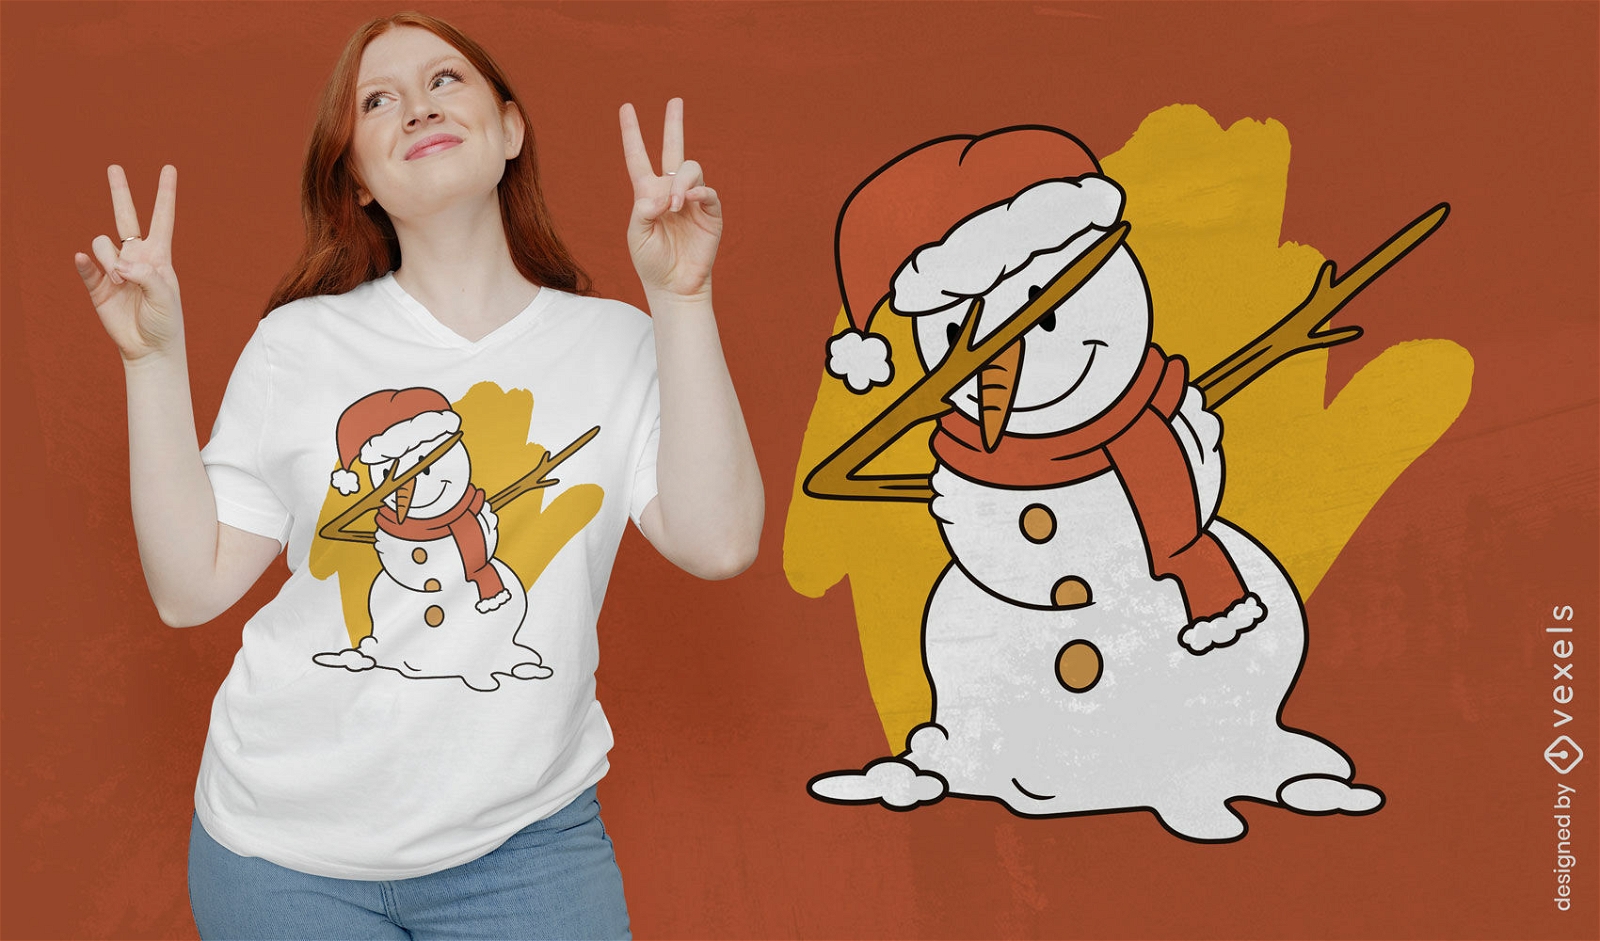 Diseño de camiseta de muñeco de nieve juguetón y dabbing.